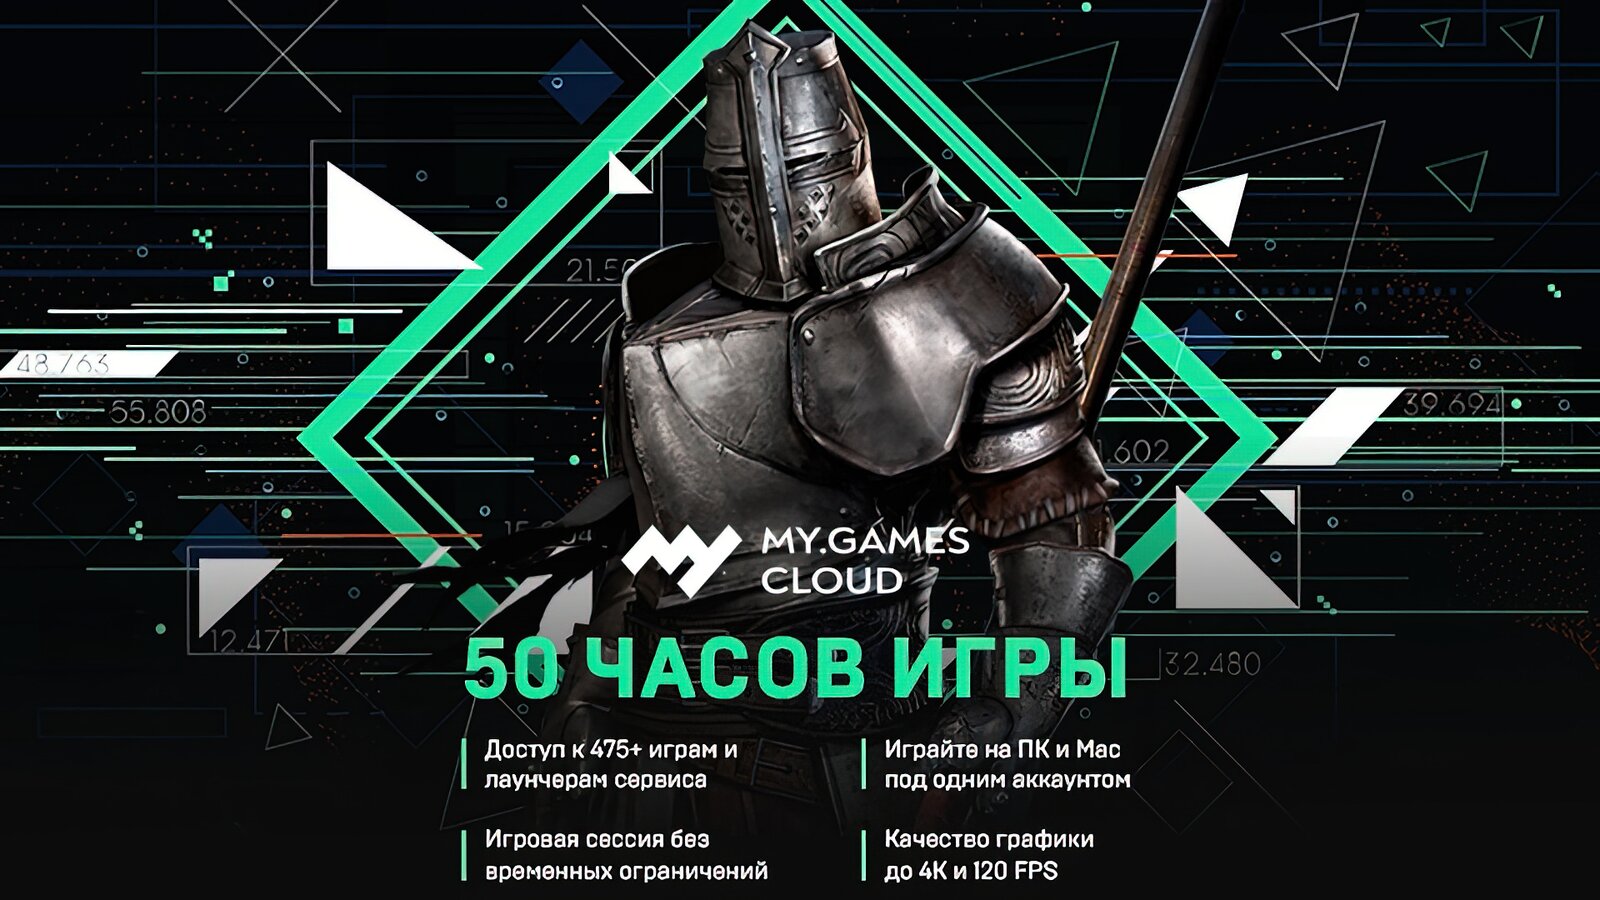 MY.GAMES Cloud - Подписка 50 часов